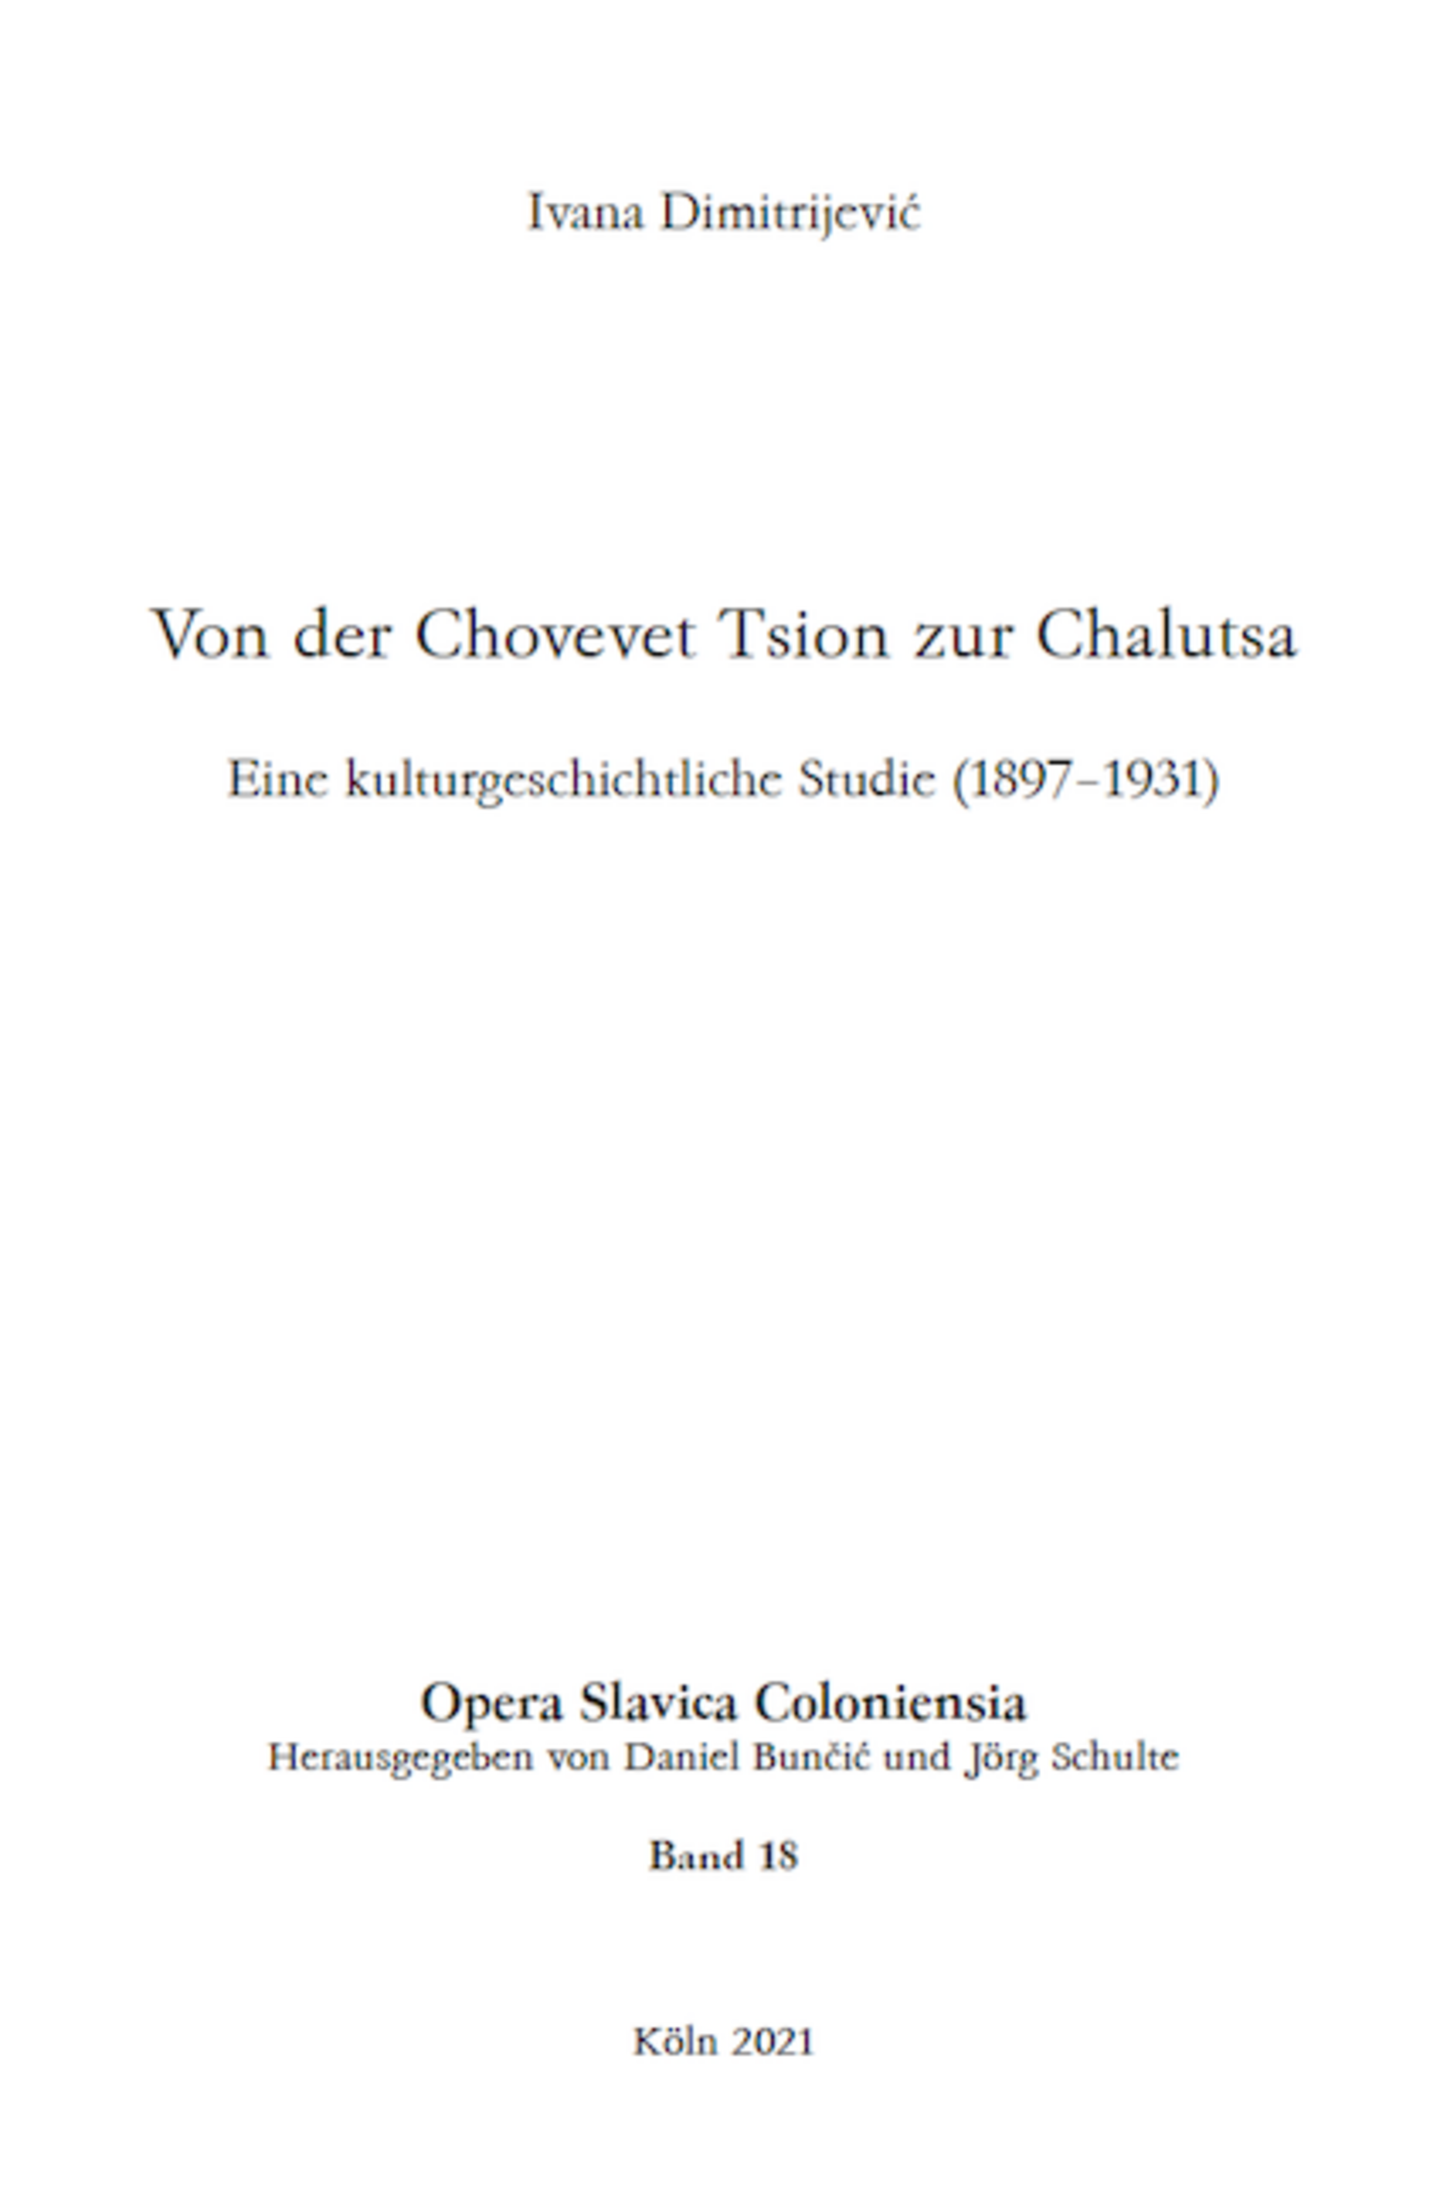 Opera Slavica Coloniensia, Bd. 18: Ivana Dimitrijević (2021) Von der Chovevet Tsion zur Chalutsa Eine kulturgeschichtliche Studie (1897–1931)